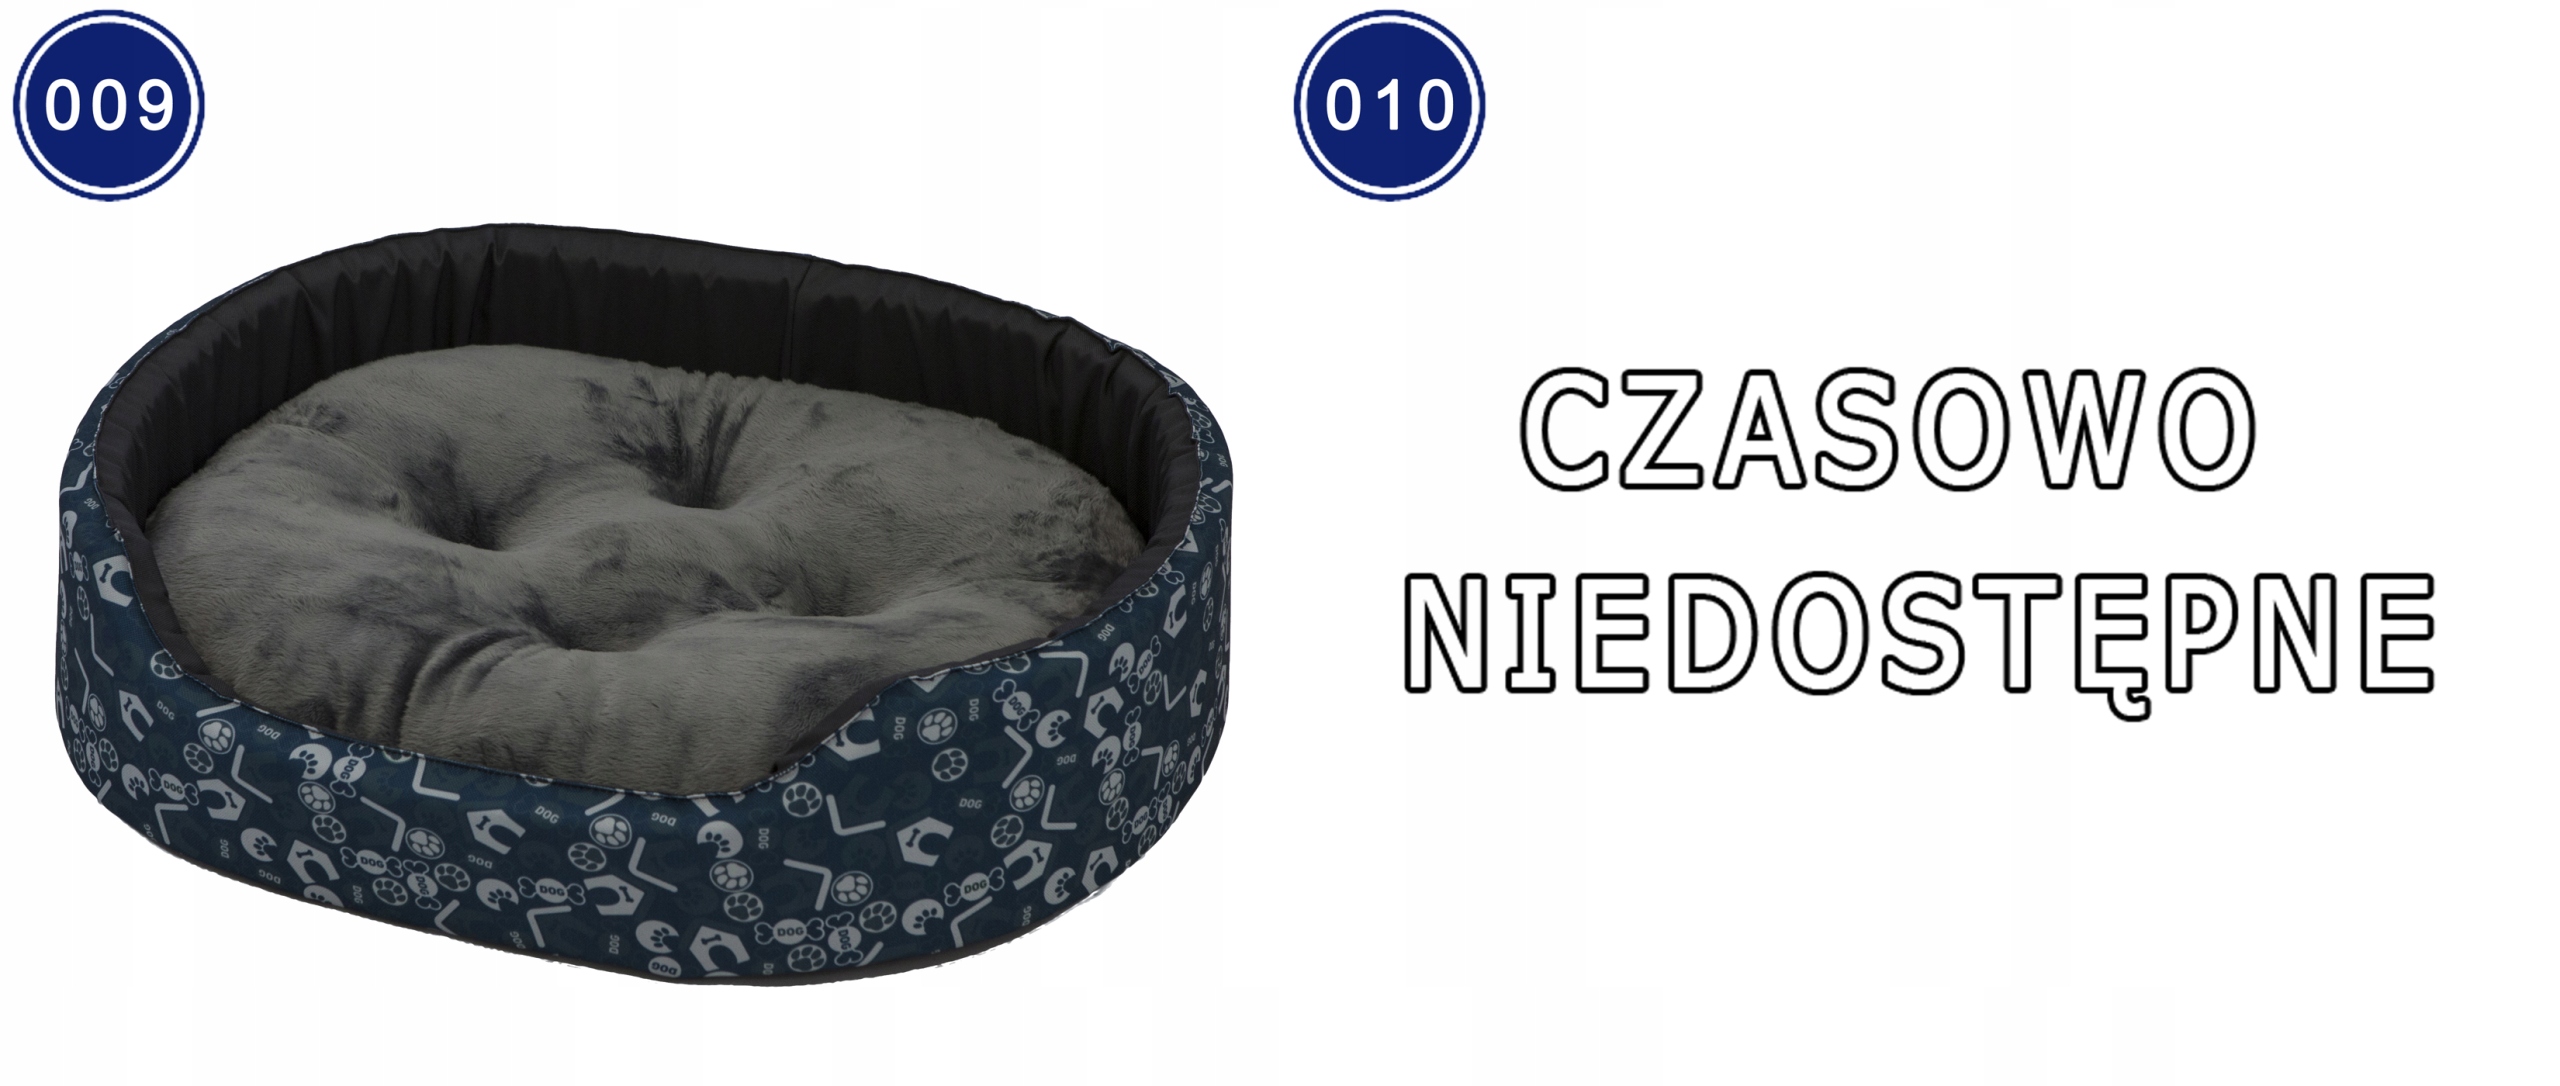 Кровать материал классический премиум собака кошка XL цвет бежевый белый черный кремовый оттенки коричневого оттенки розового оттенки серого оттенки зеленого многоцветный